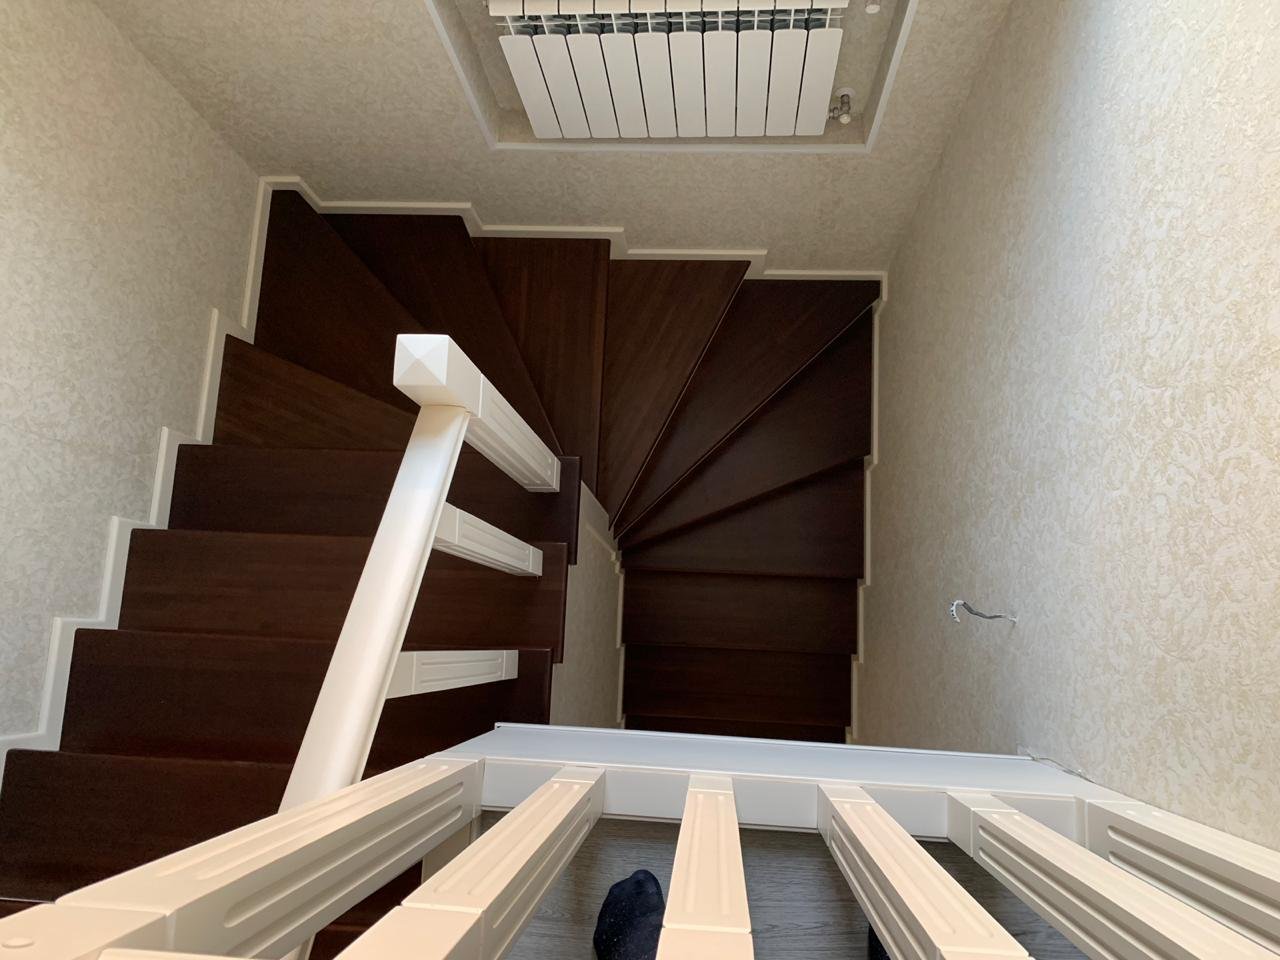 Лестница на второй 180 градусов. Лестница на второй этаж с забежными ступенями 180 градусов. Лестница с 2 забежными ступенями. Лестница с забежными ступенями на 180 на второй этаж. Лестница на монокосоуре с забежными ступенями на 180 градусов.